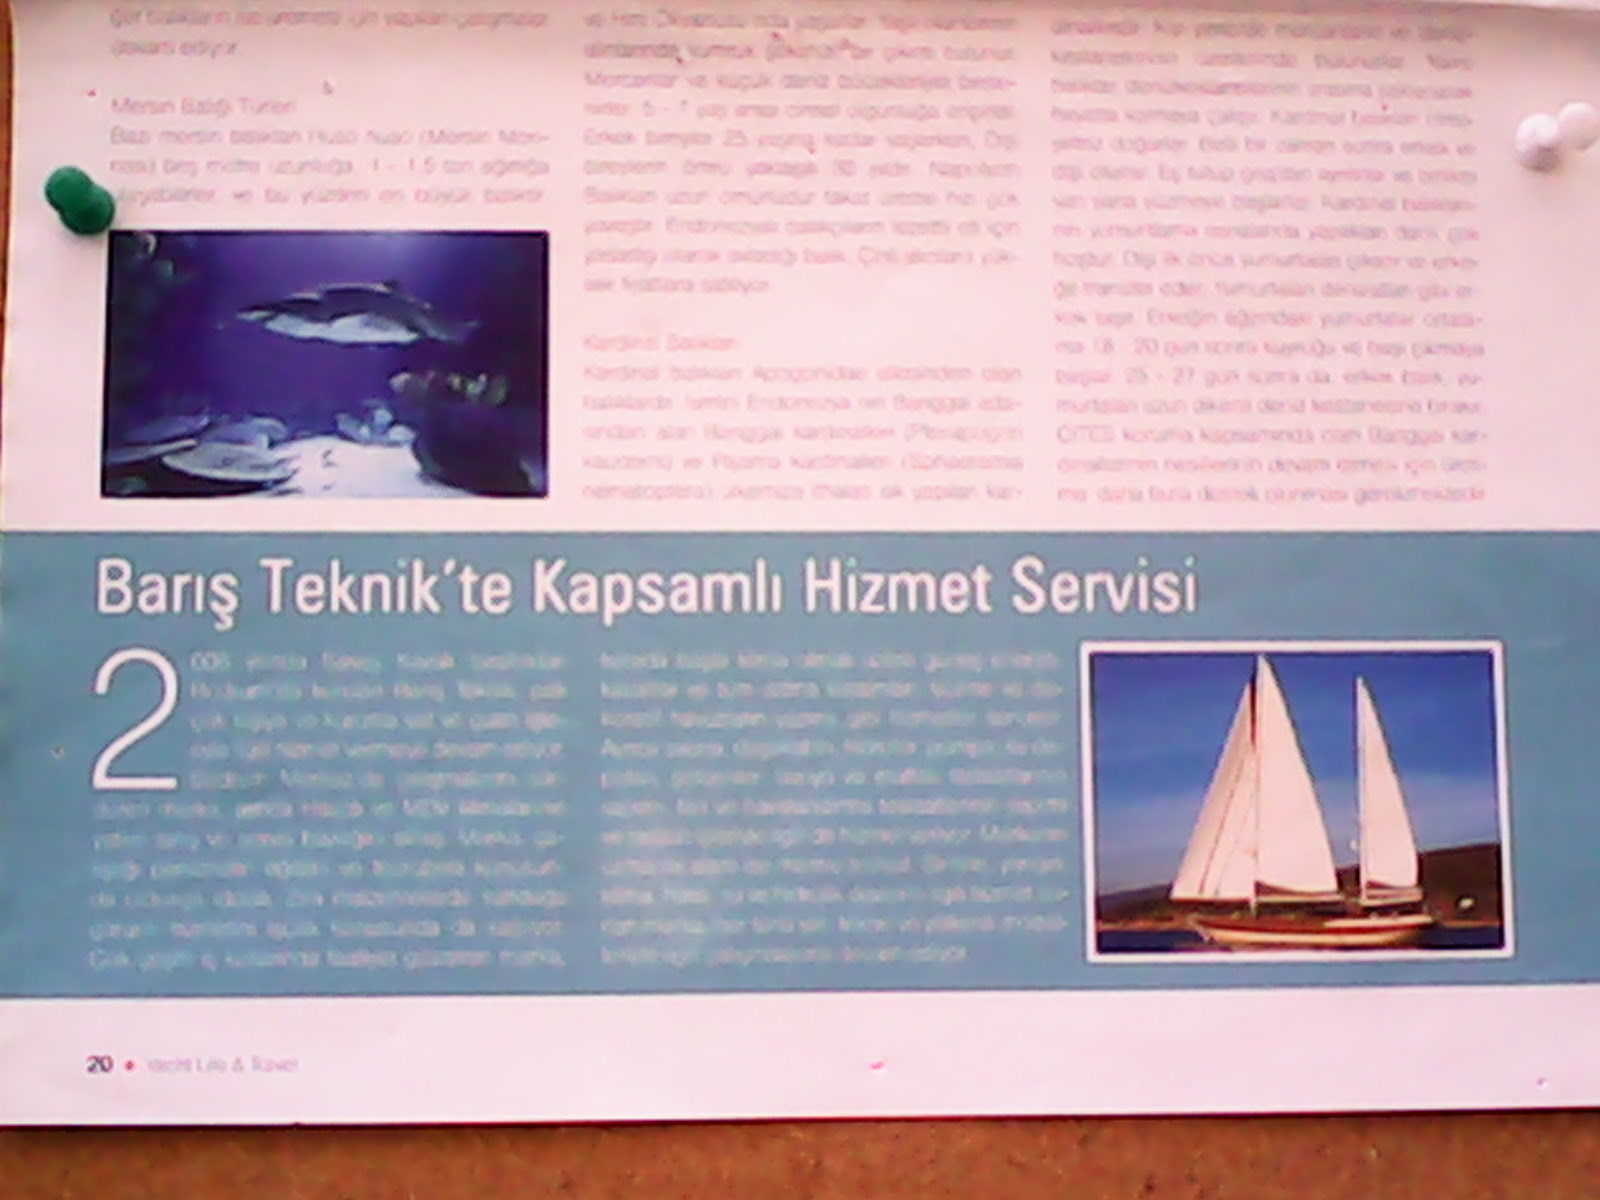 Yacht Life & Travel ile Deniz Dünyası Dergilerinde